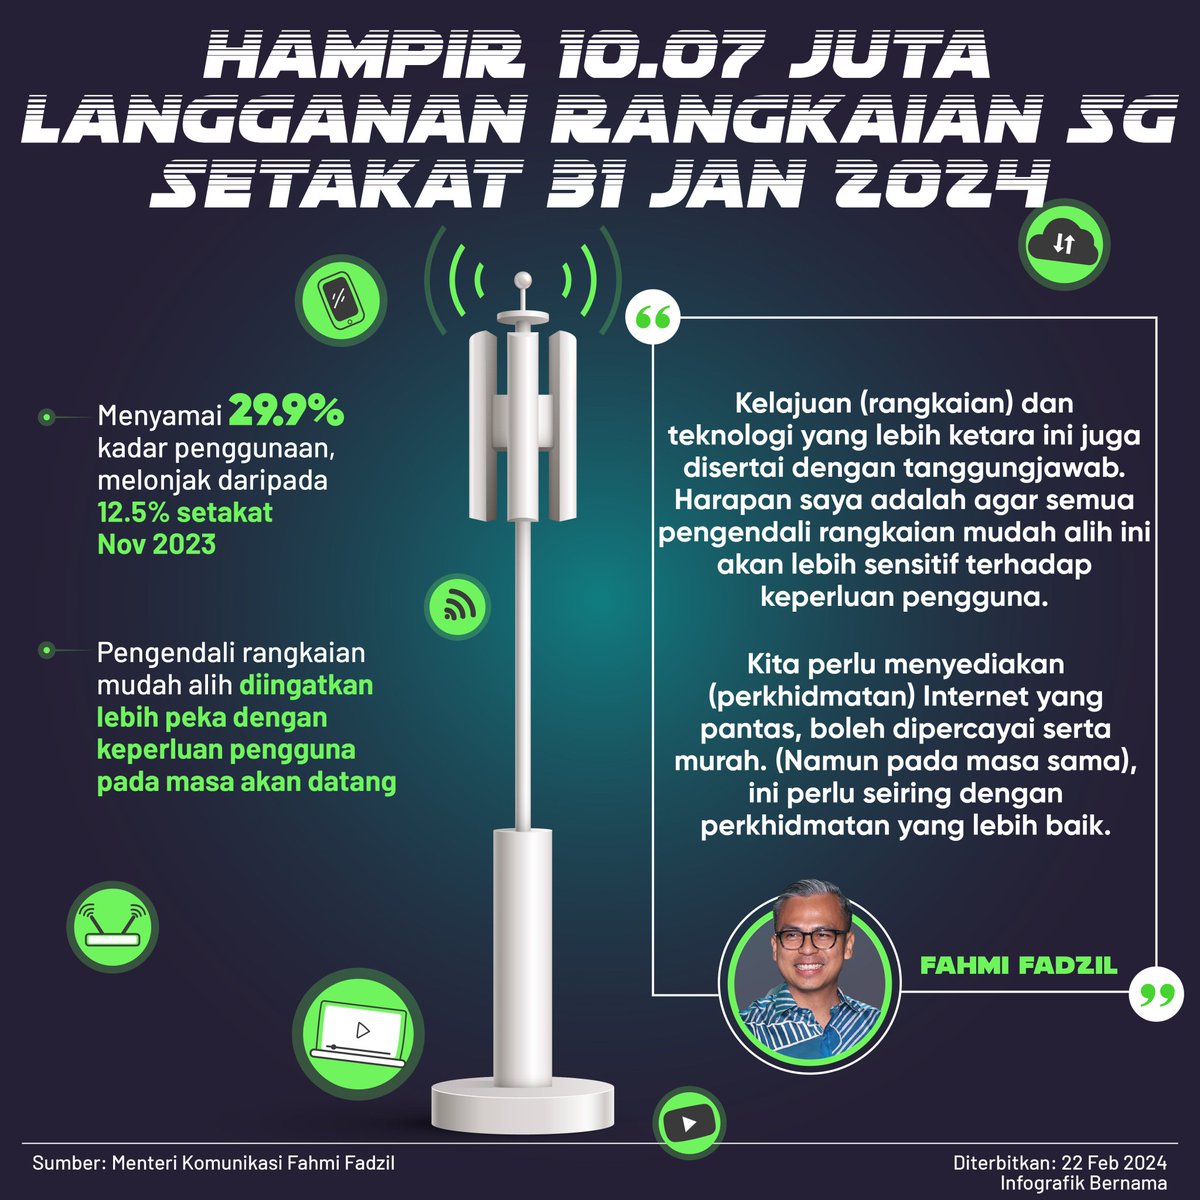 Malaysia mencatatkan hampir 10.07 juta langganan perkhidmatan rangkaian 5G atau menyamai kadar penggunaan sebanyak 29.9 peratus setakat 31 Januari 2024 - Menteri Komunikasi, Fahmi Fadzil

#5G #5GMalaysia #5GConnectivity #MalaysiaMADANI #KLCeria #CMSWPKL
@MCMC_RASMI